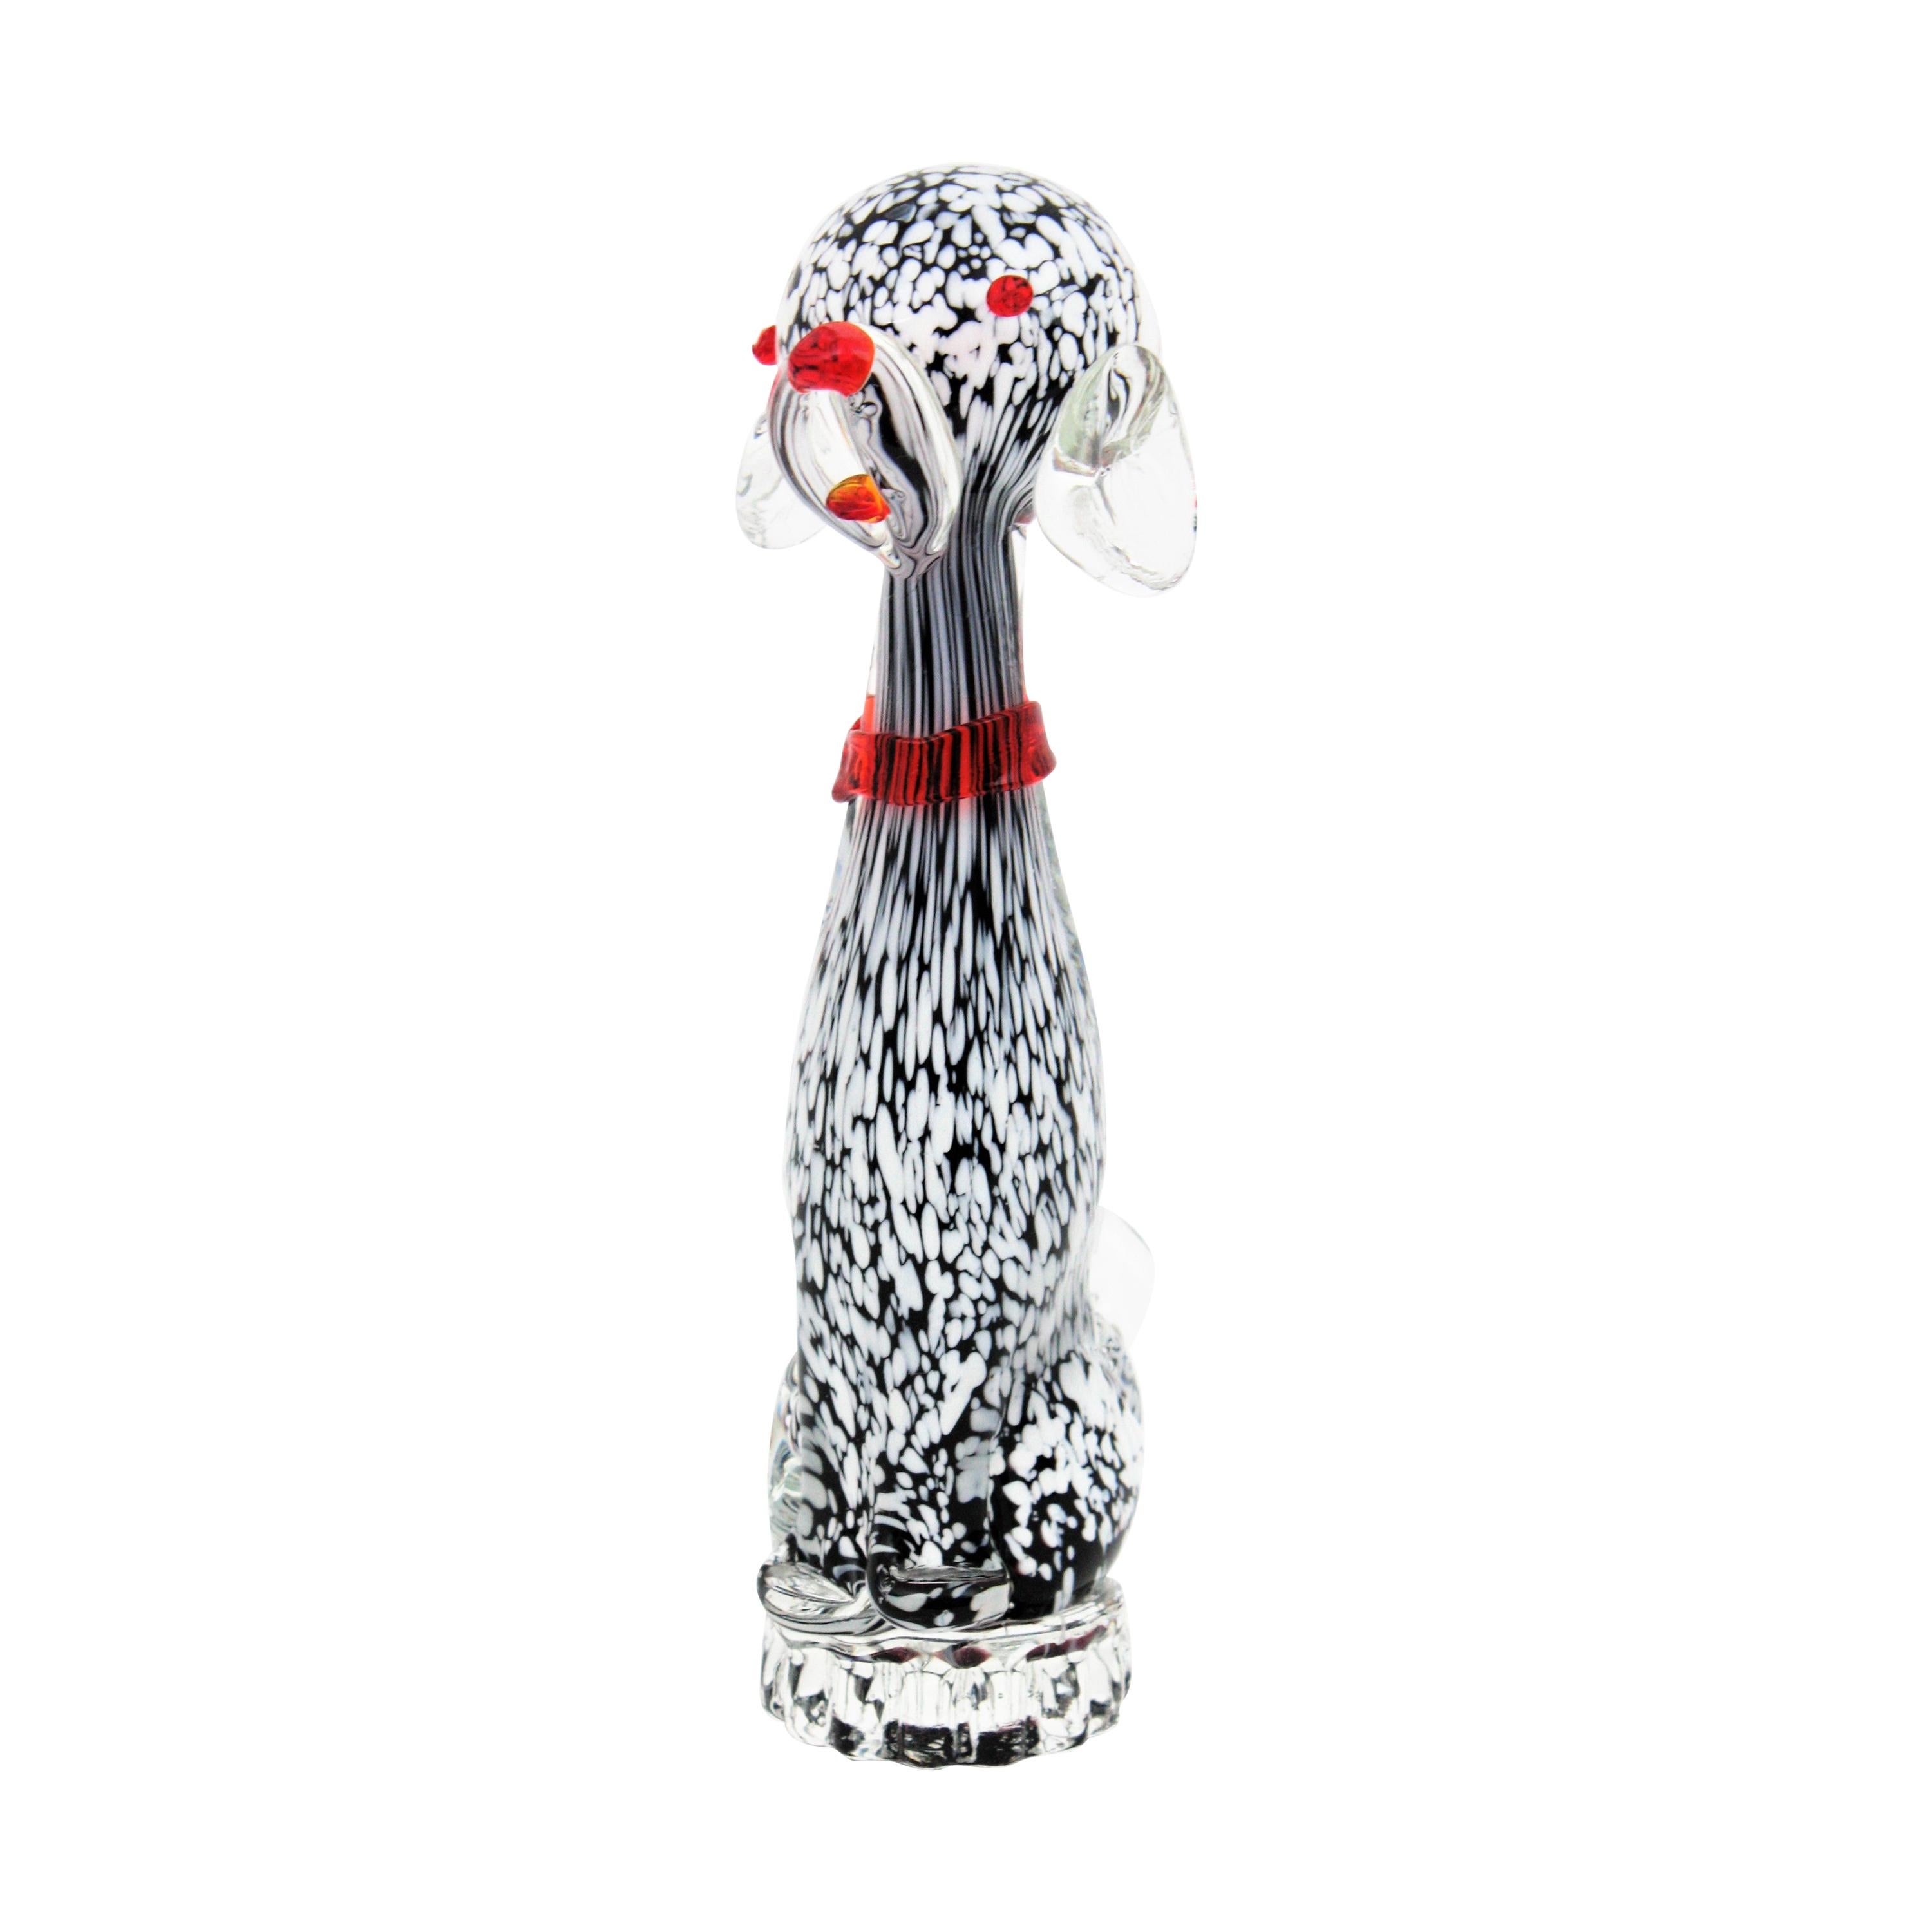 Mignonne figurine de chien chiot en verre soufflé à la main de Murano en noir et blanc, Italie, années 1950.
Ce gentil toutou se tient debout sur un petit socle en verre transparent. Elle présente des taches blanches sur un fond noir et est finie